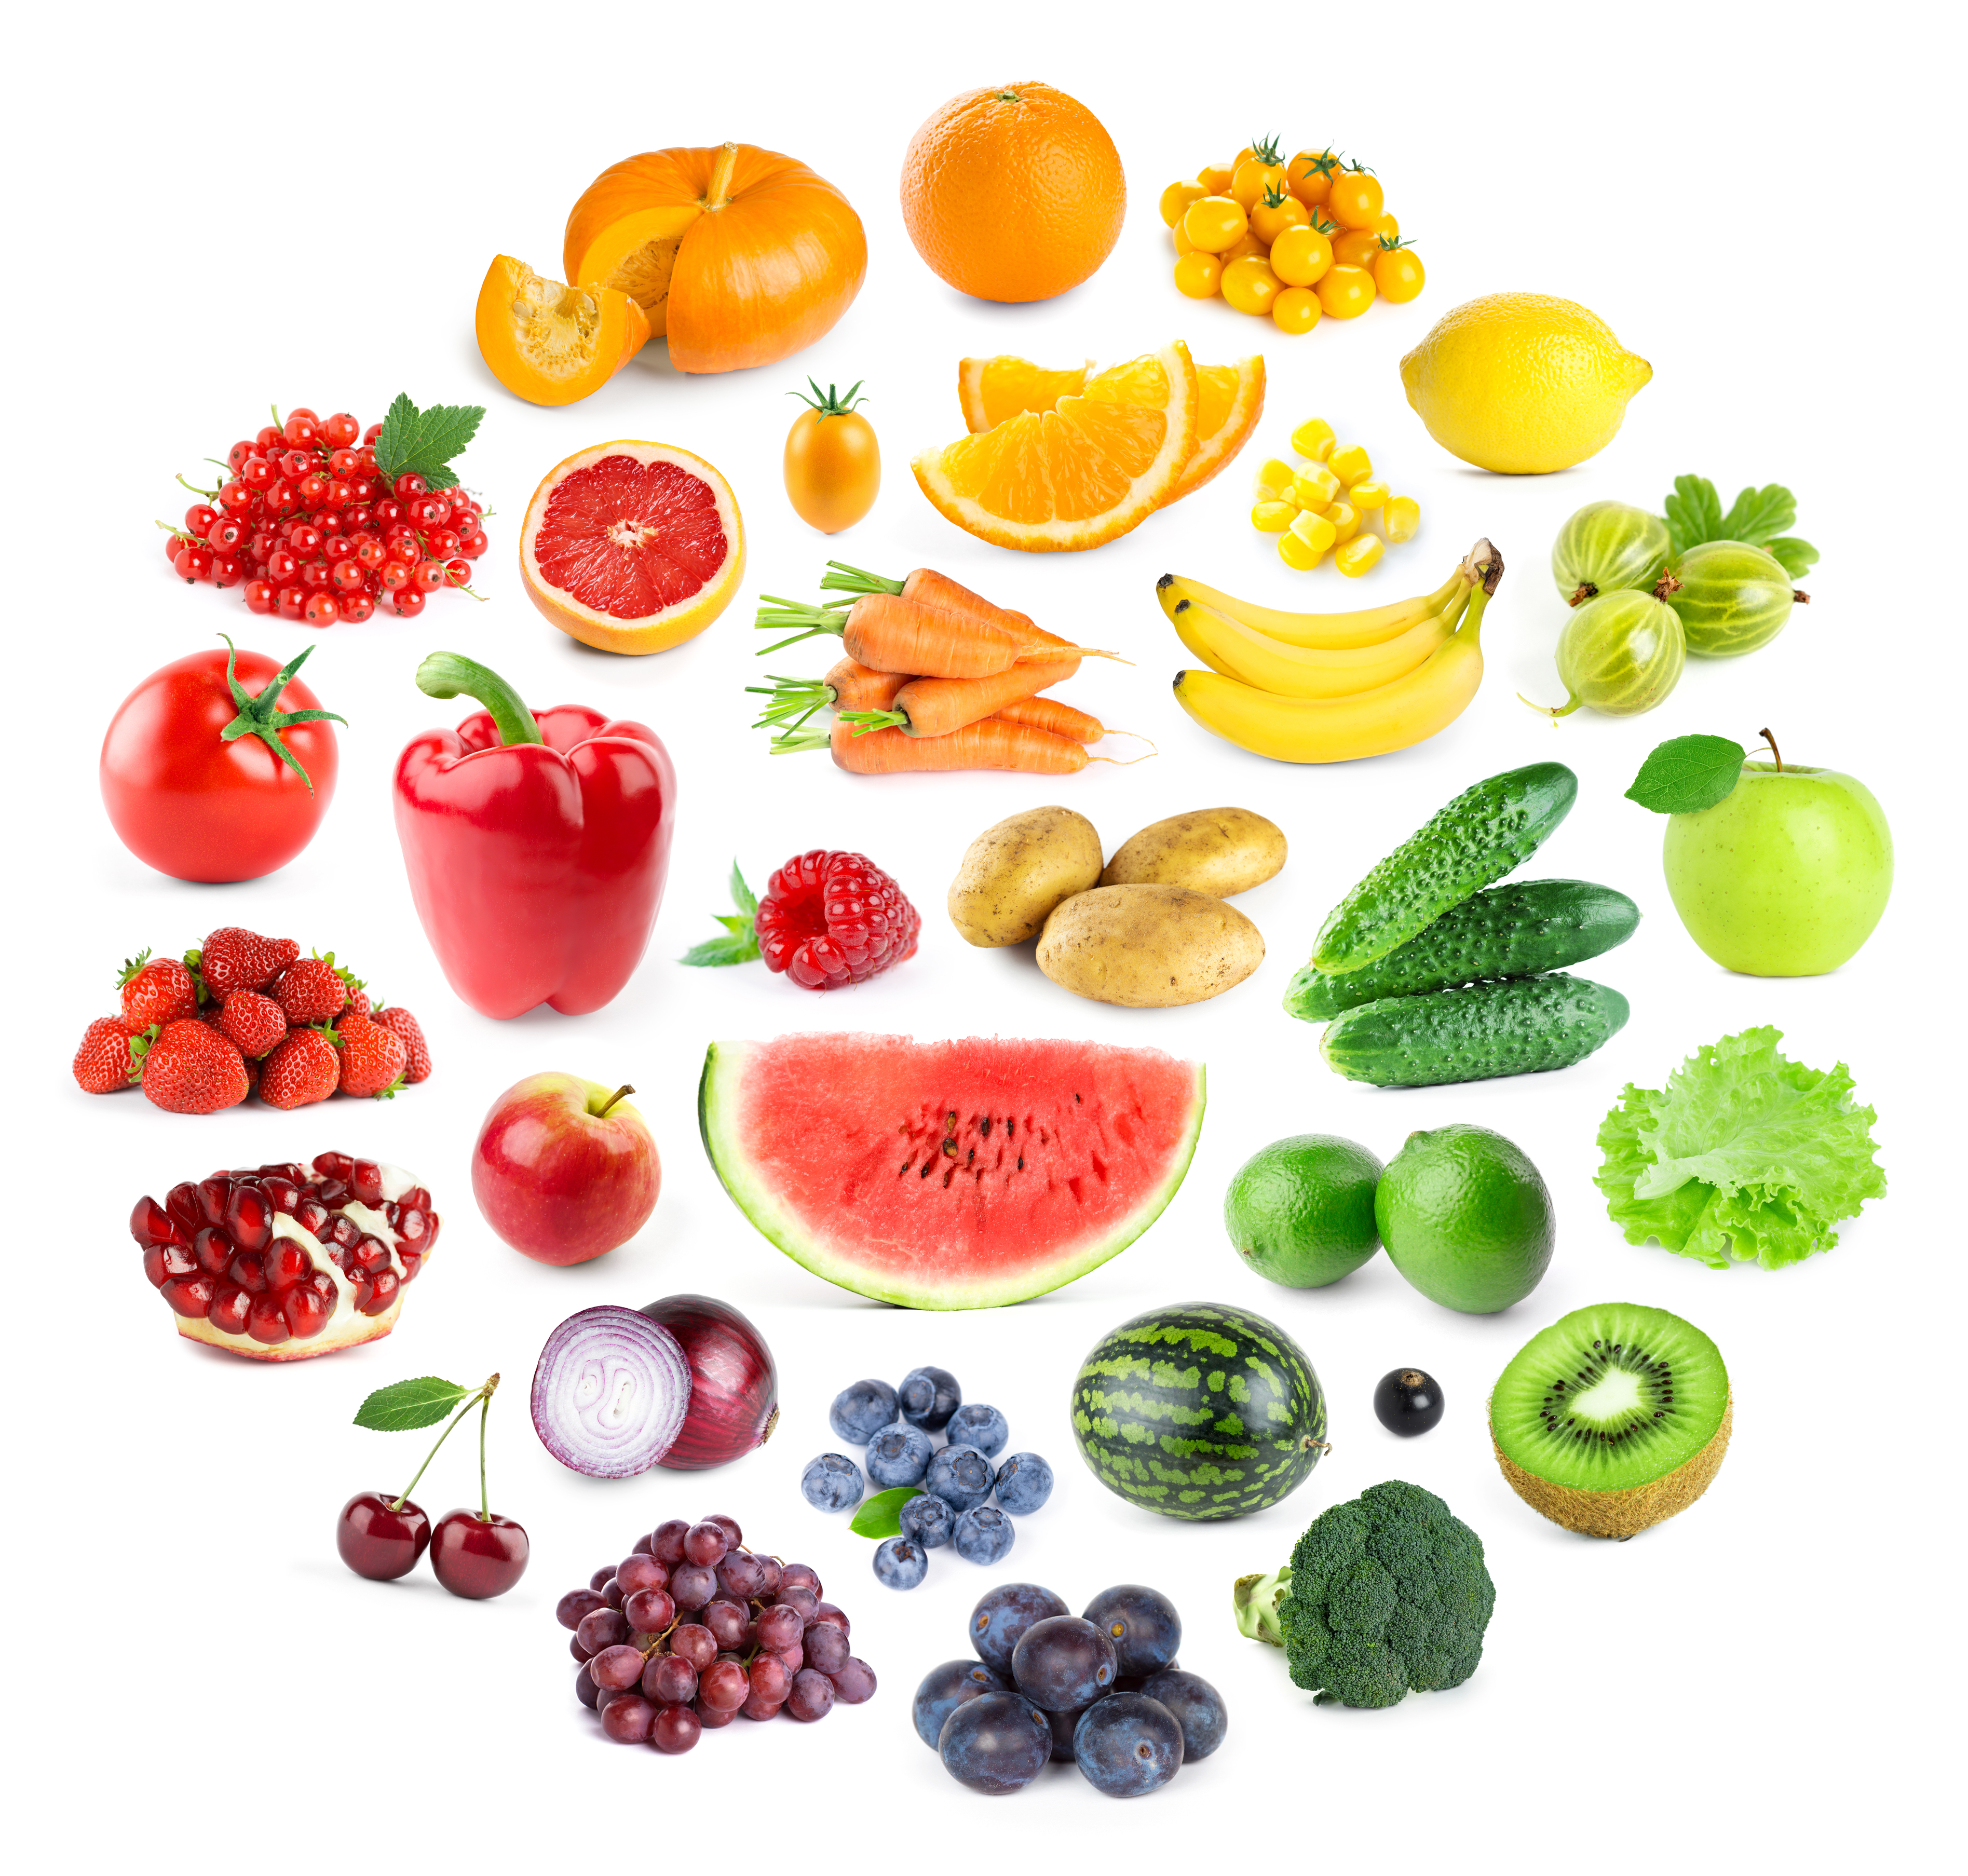 BES Oprichter Reageren Frutas y verduras: Cuál es la importancia de sus colores y cómo pueden  beneficiarnos